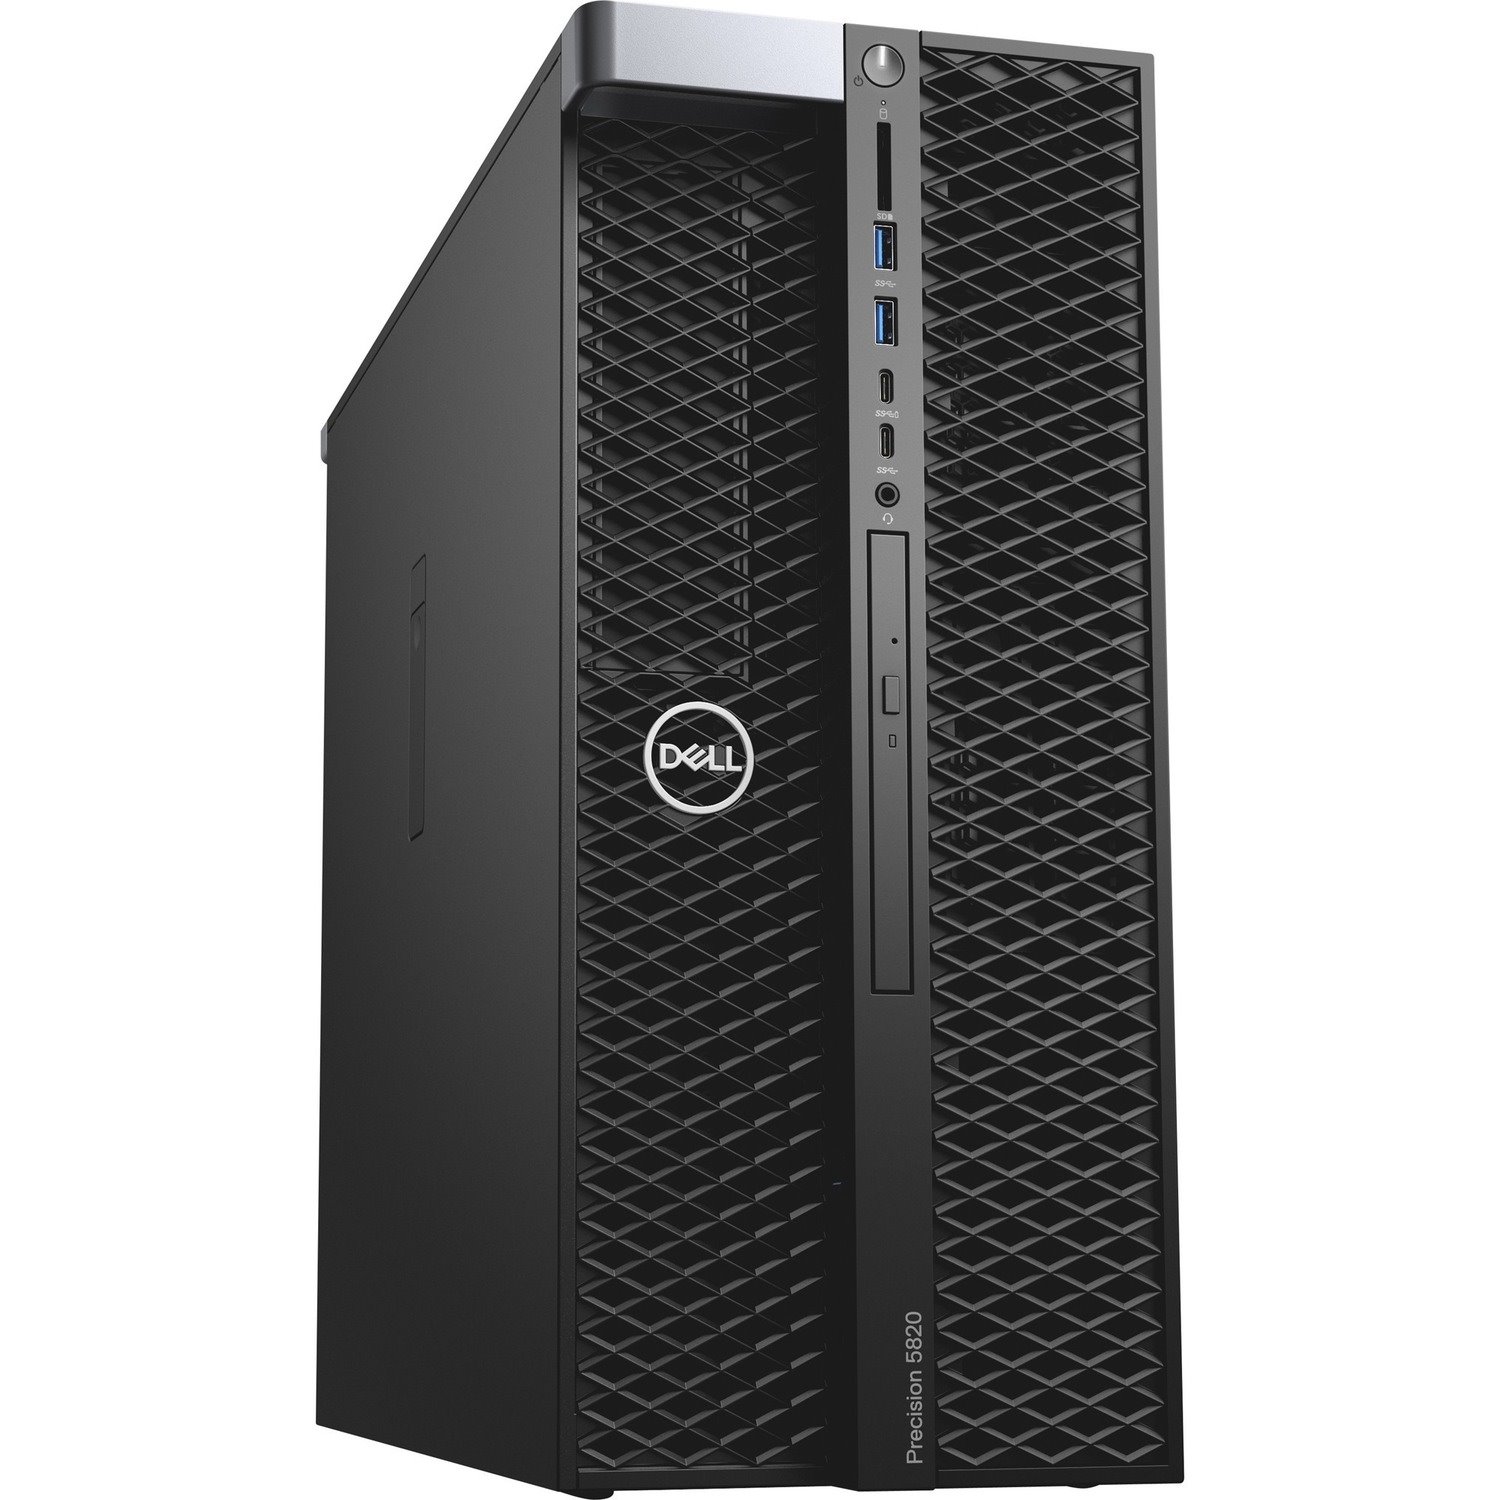 Dell Precision 5000 5820 Workstation - 1 x Intel Xeon W-2225 - 32 GB - 1 TB HDD - 512 GB SSD - Tower